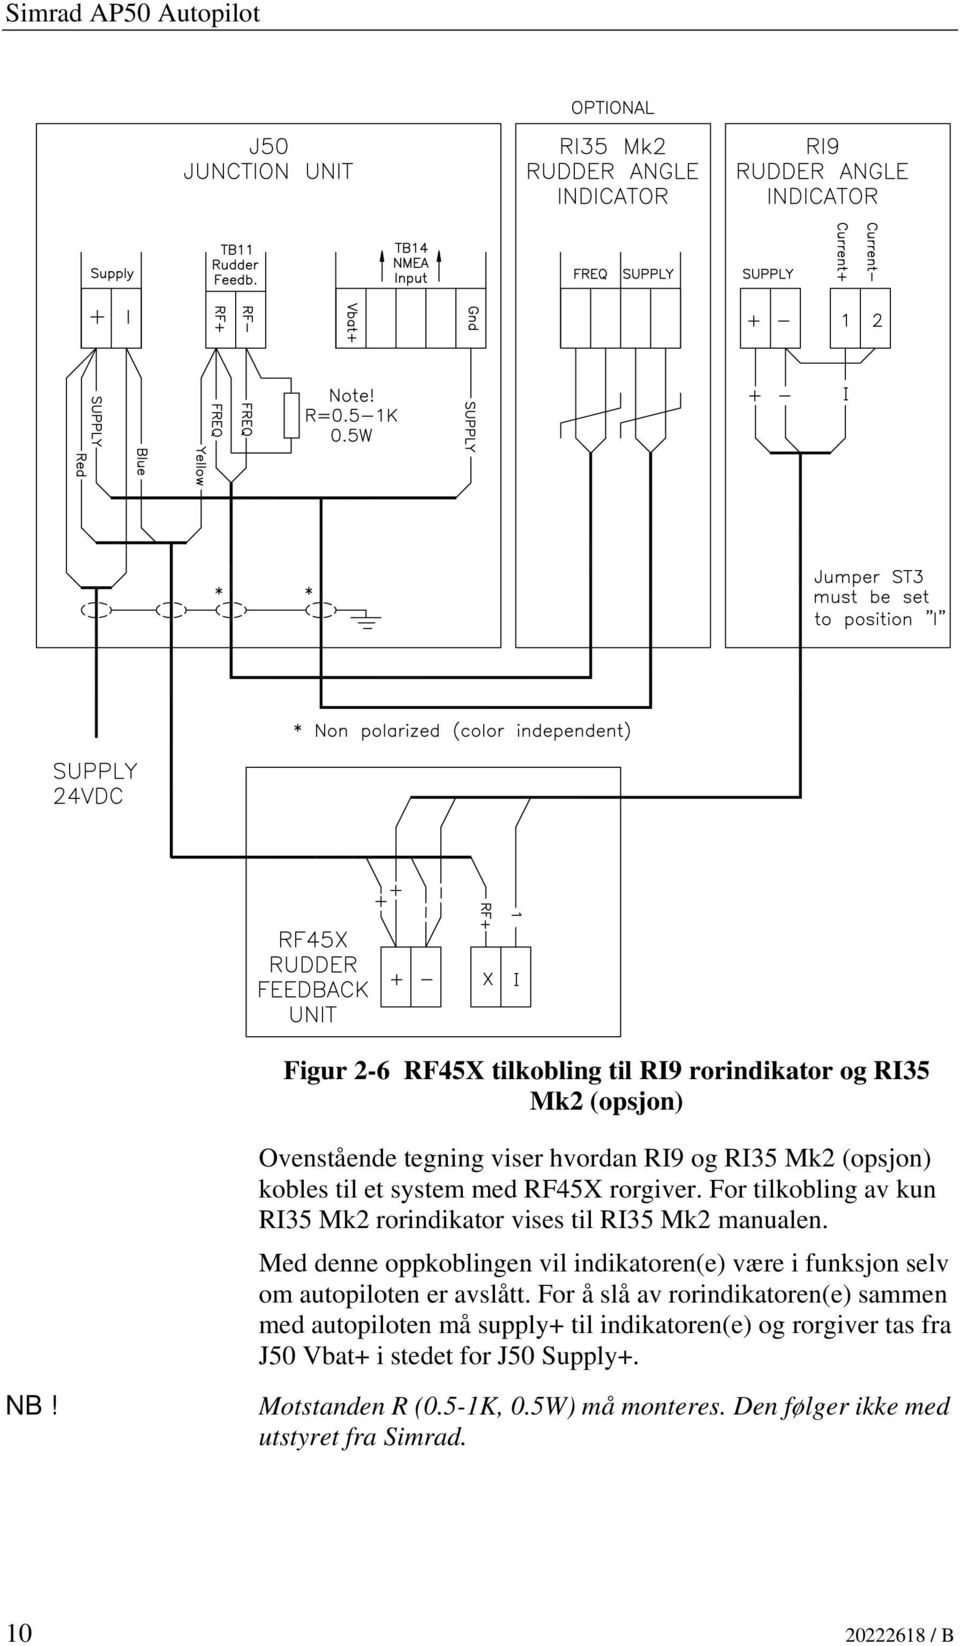 For tilkobling av kun RI35 Mk2 rorindikator vises til RI35 Mk2 manualen.